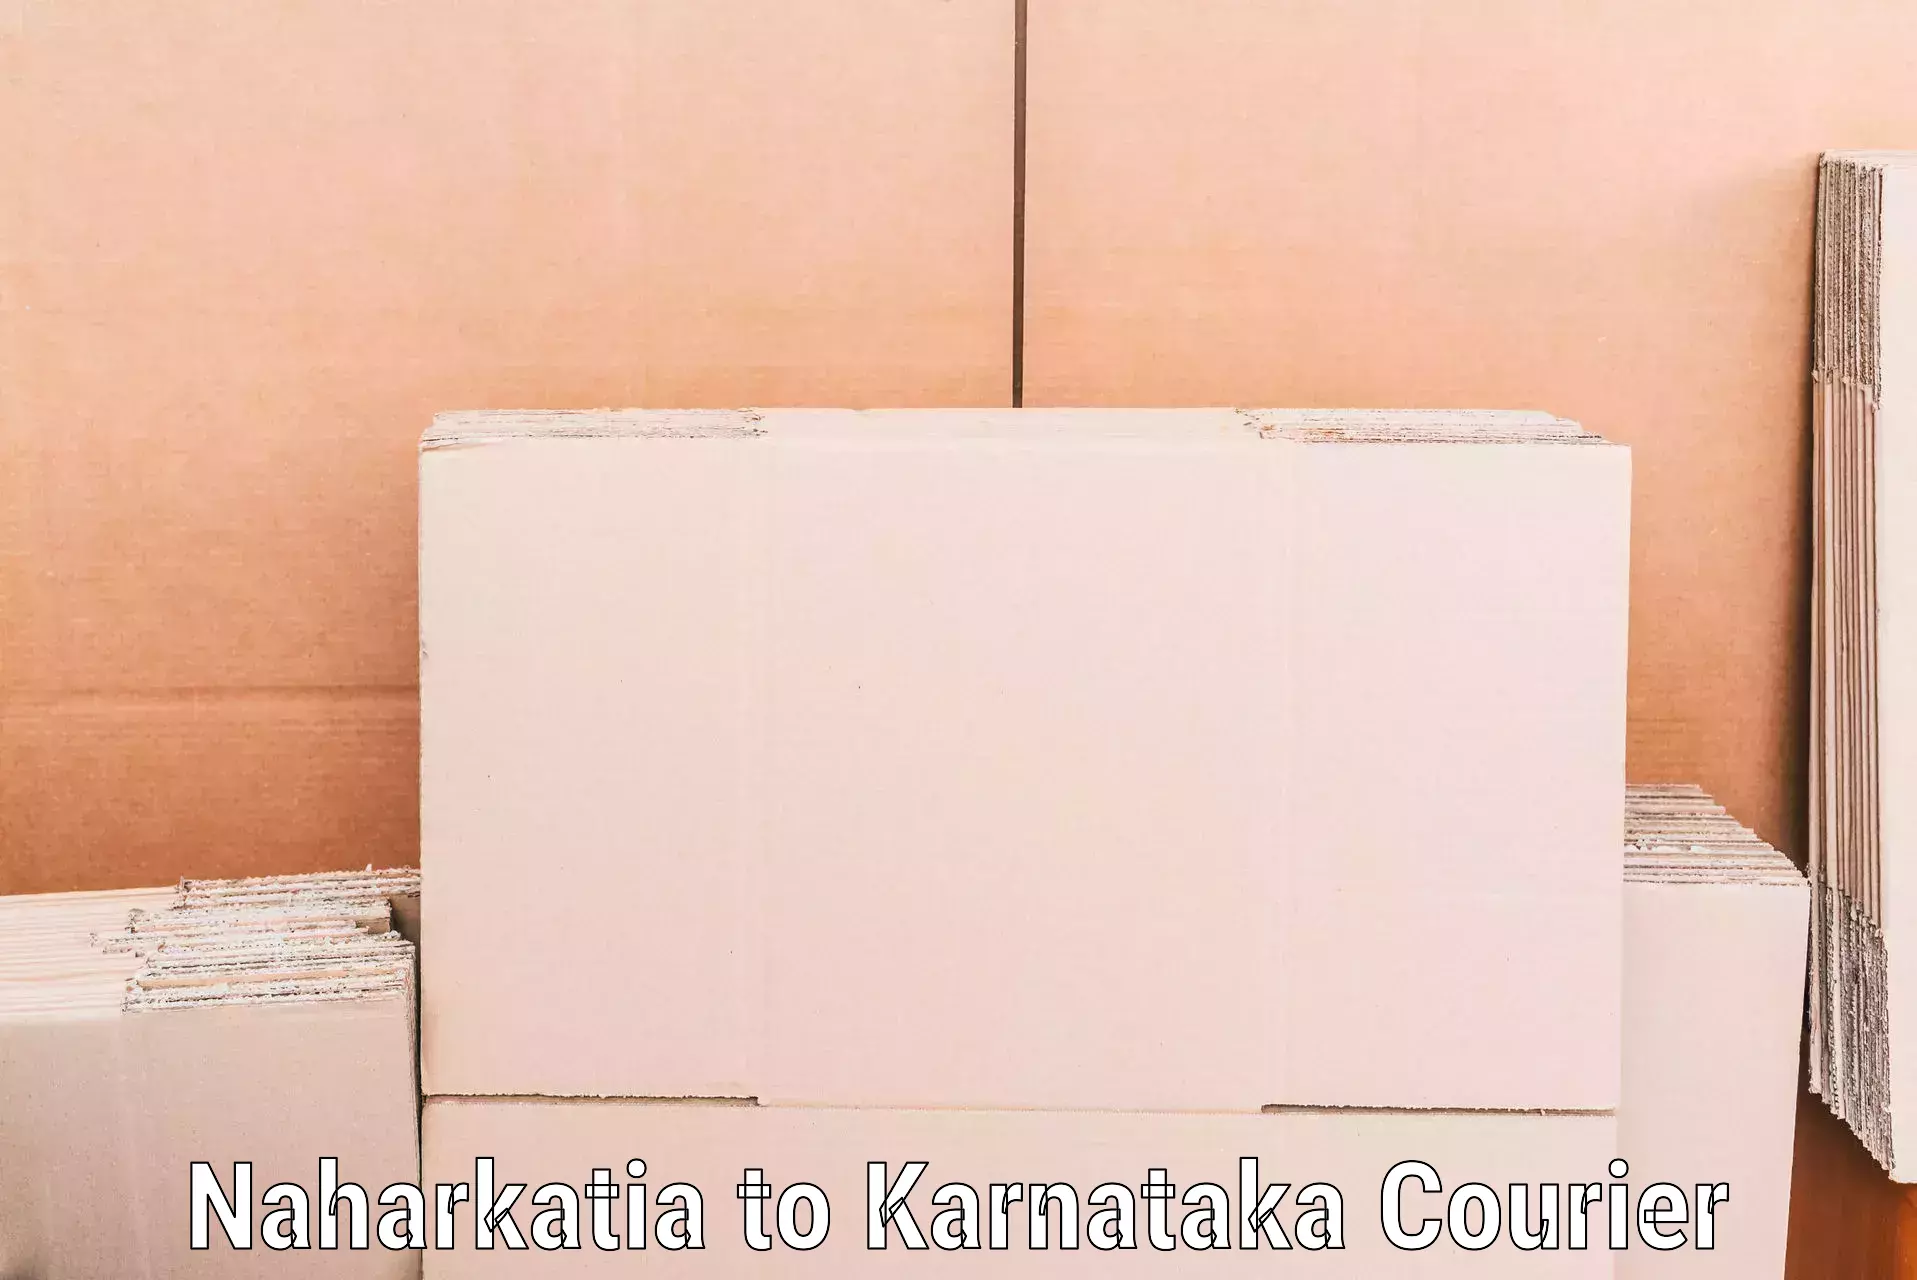 Home moving experts Naharkatia to Karnataka